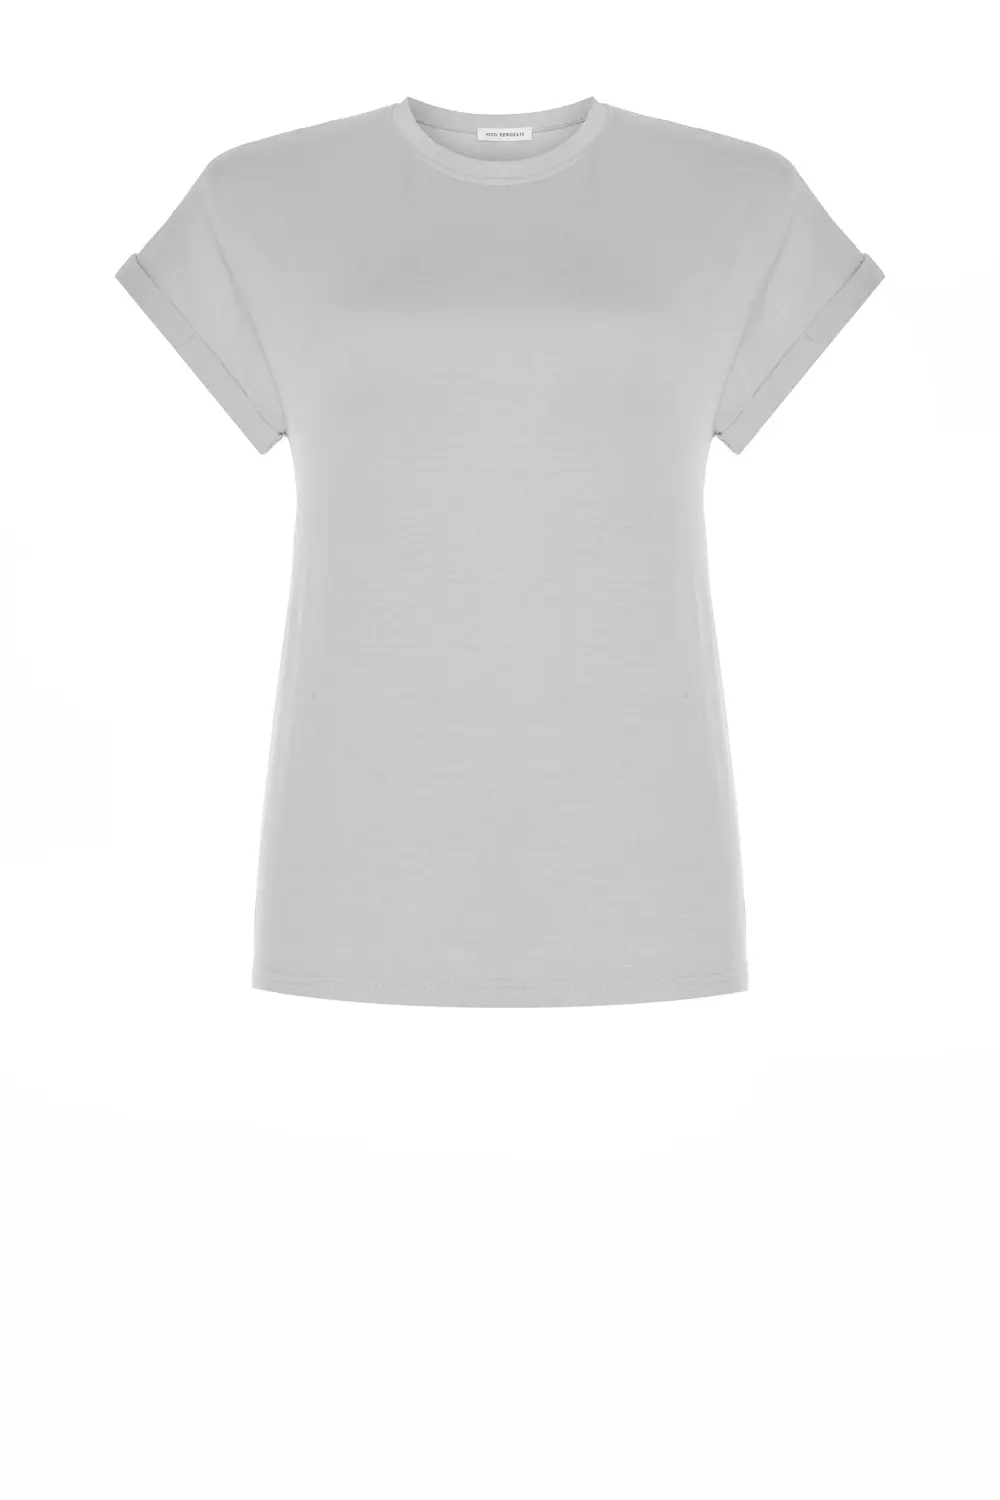 jasno szara bluzka damska dzianinowa micromodal krótki rękaw koszulka polska marka Vito Vergelis